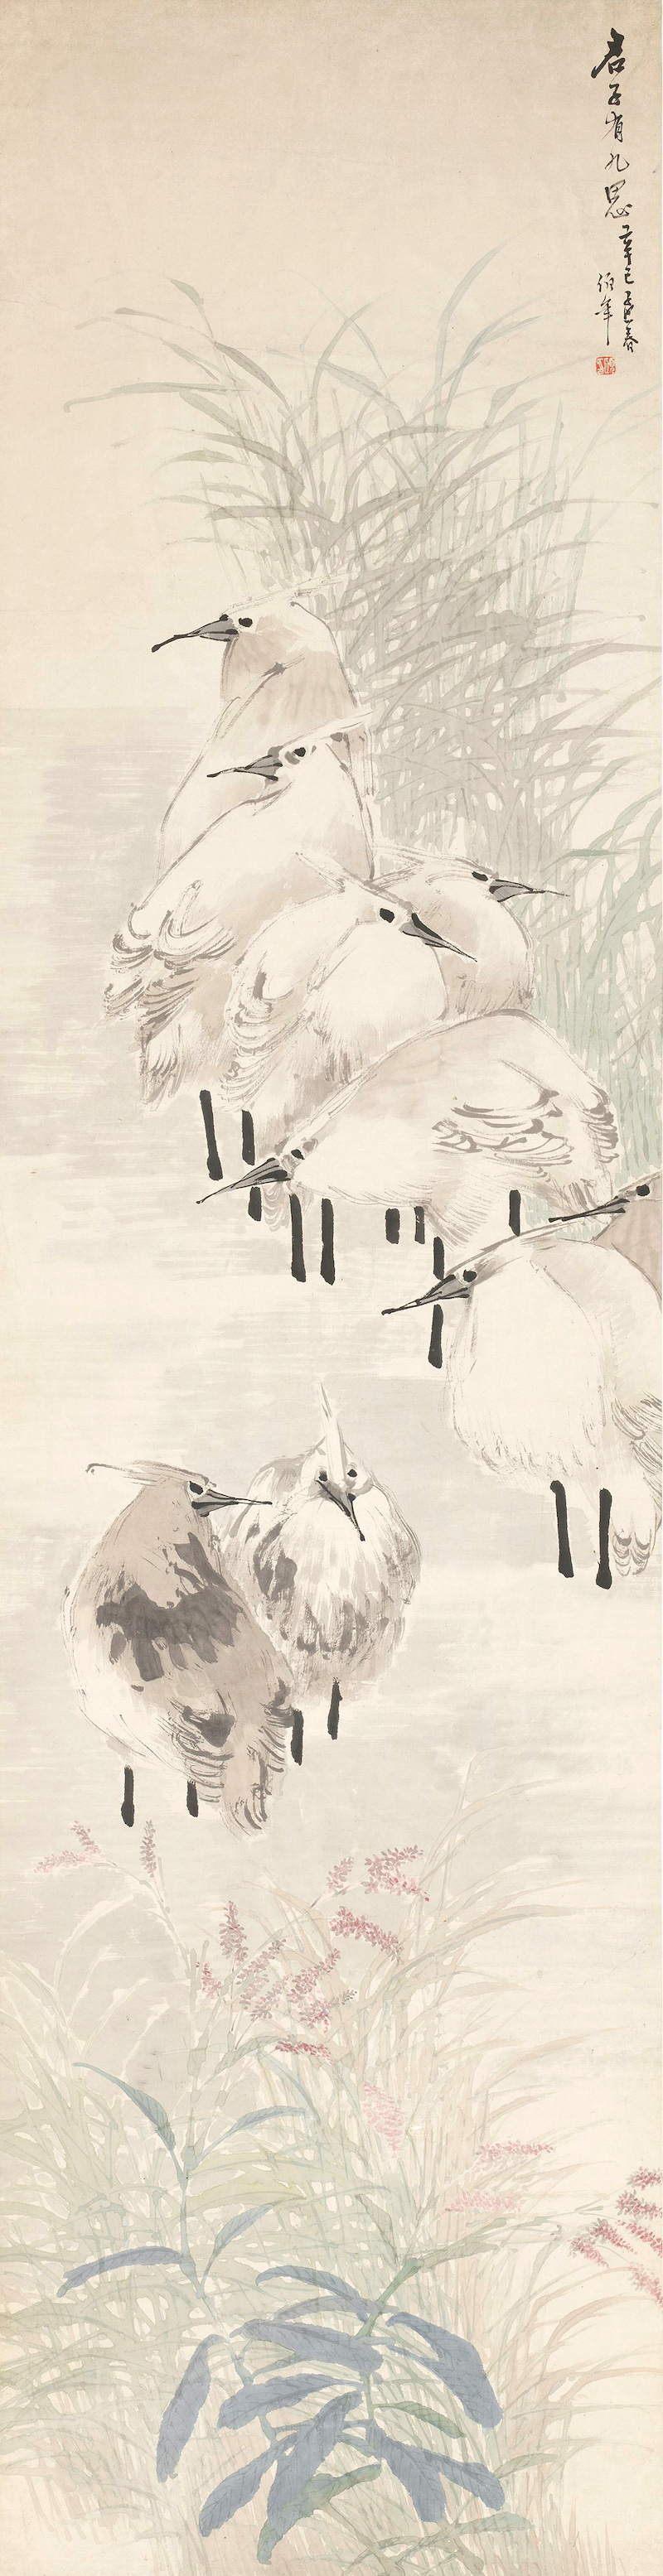 任伯年《花鸟四条屏》之四 鹭鸶水草1881 年 纸本设色 纵180 厘米 横